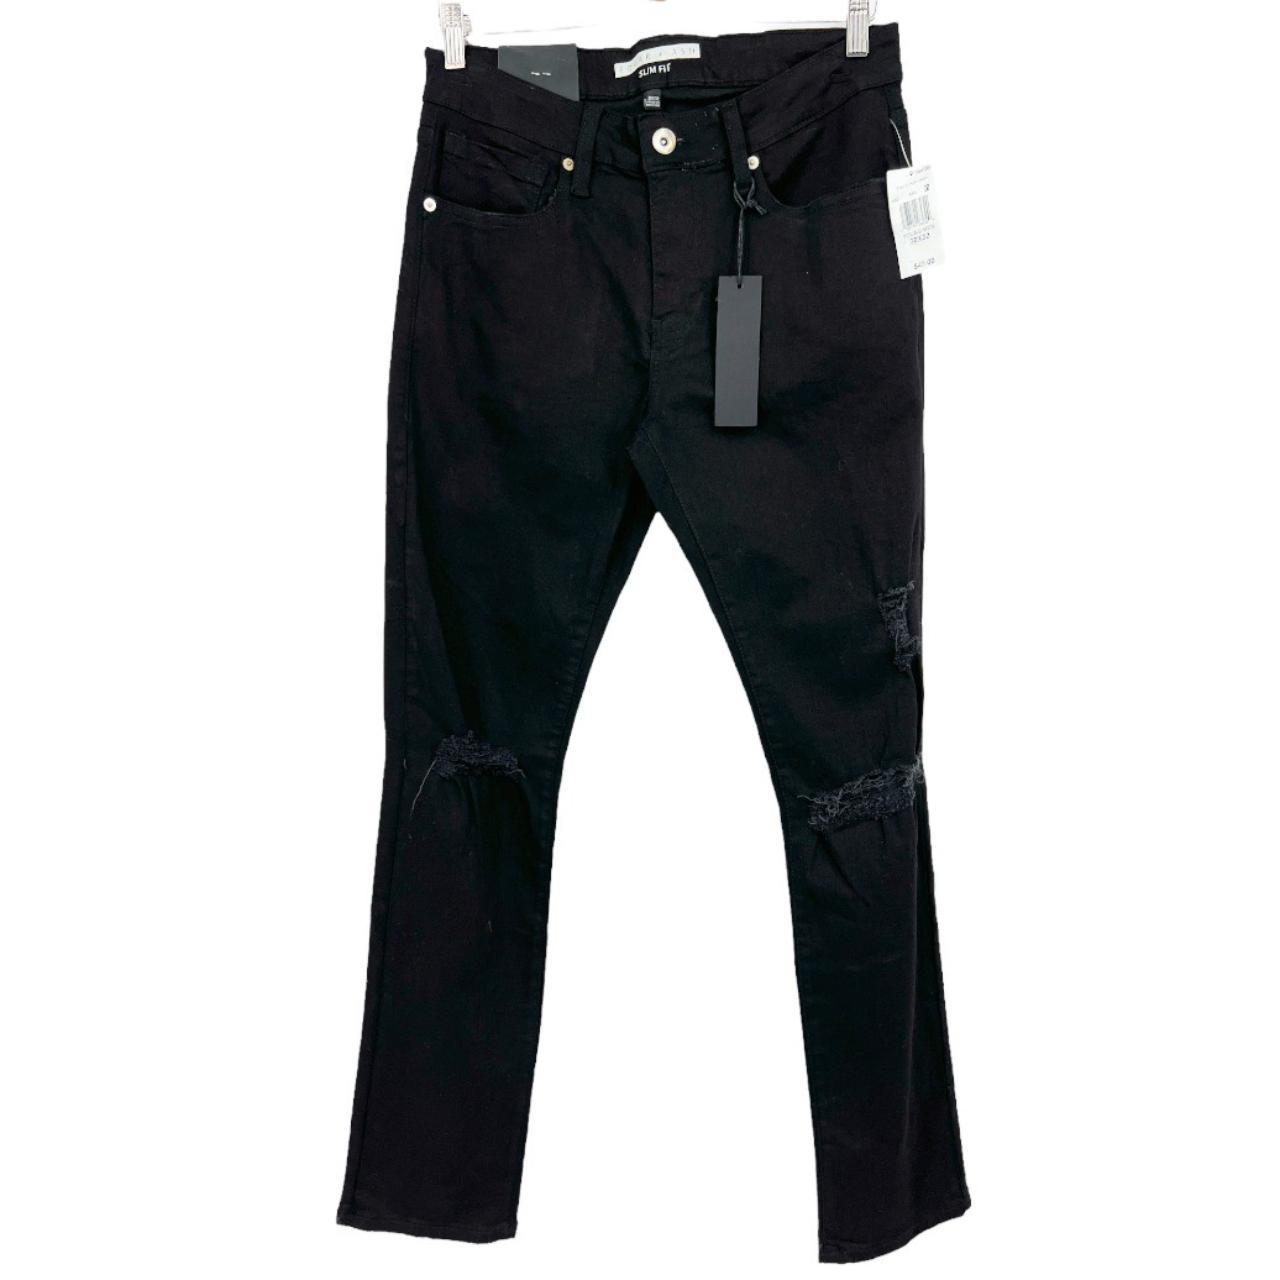 Mens Black Jeans EDGAR + ASH Distressed 5 Pocket... - Depop